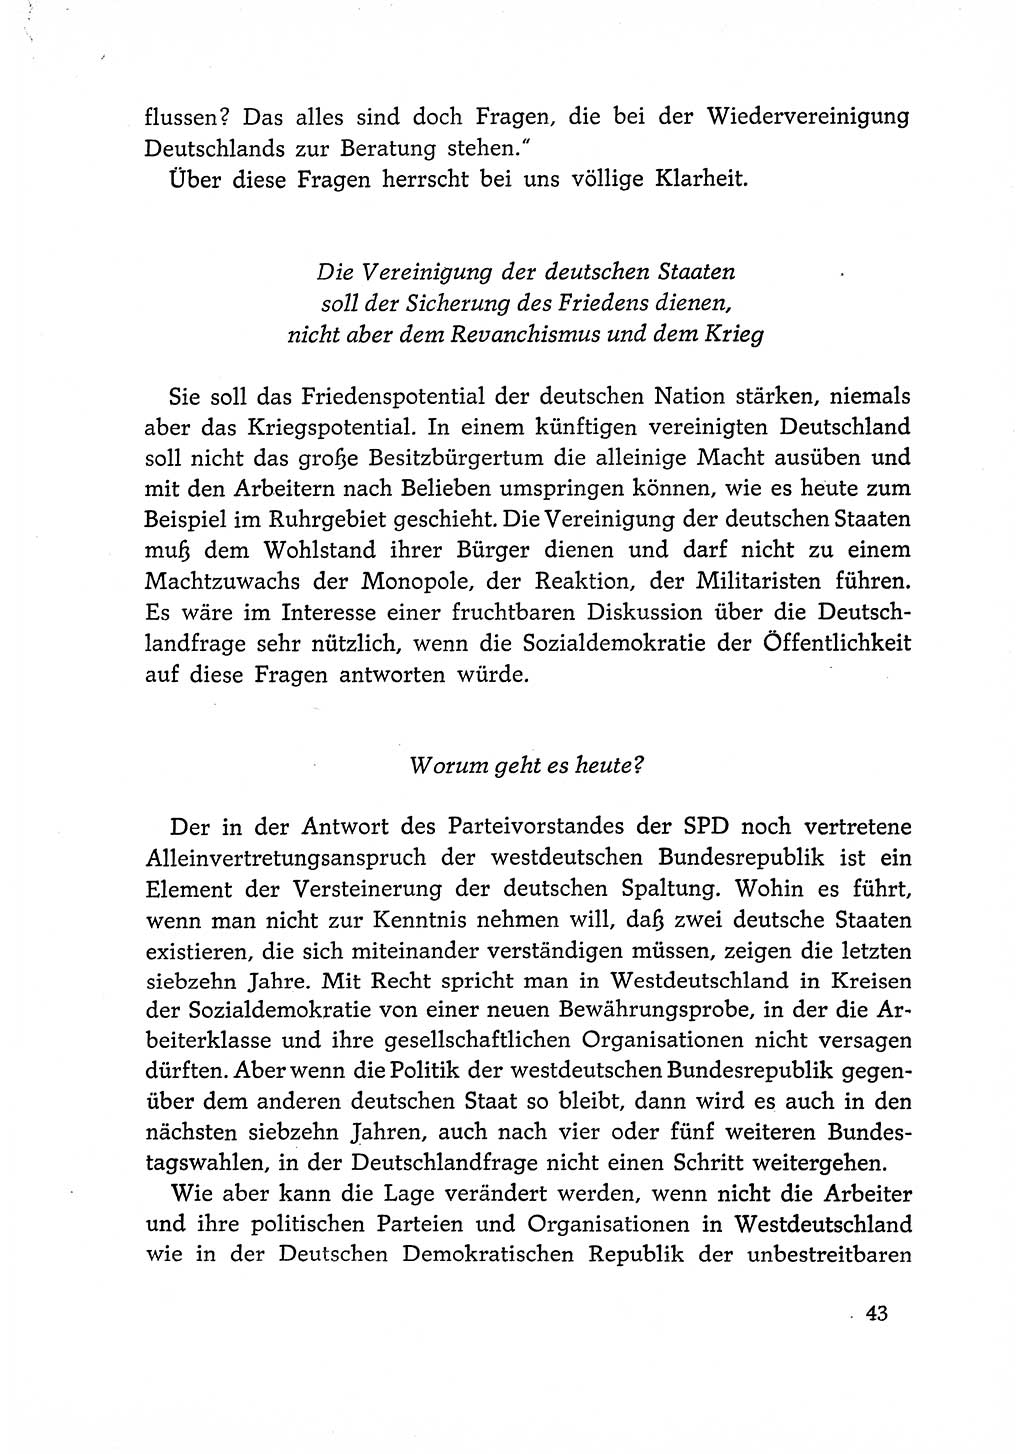 Dokumente der Sozialistischen Einheitspartei Deutschlands (SED) [Deutsche Demokratische Republik (DDR)] 1966-1967, Seite 43 (Dok. SED DDR 1966-1967, S. 43)